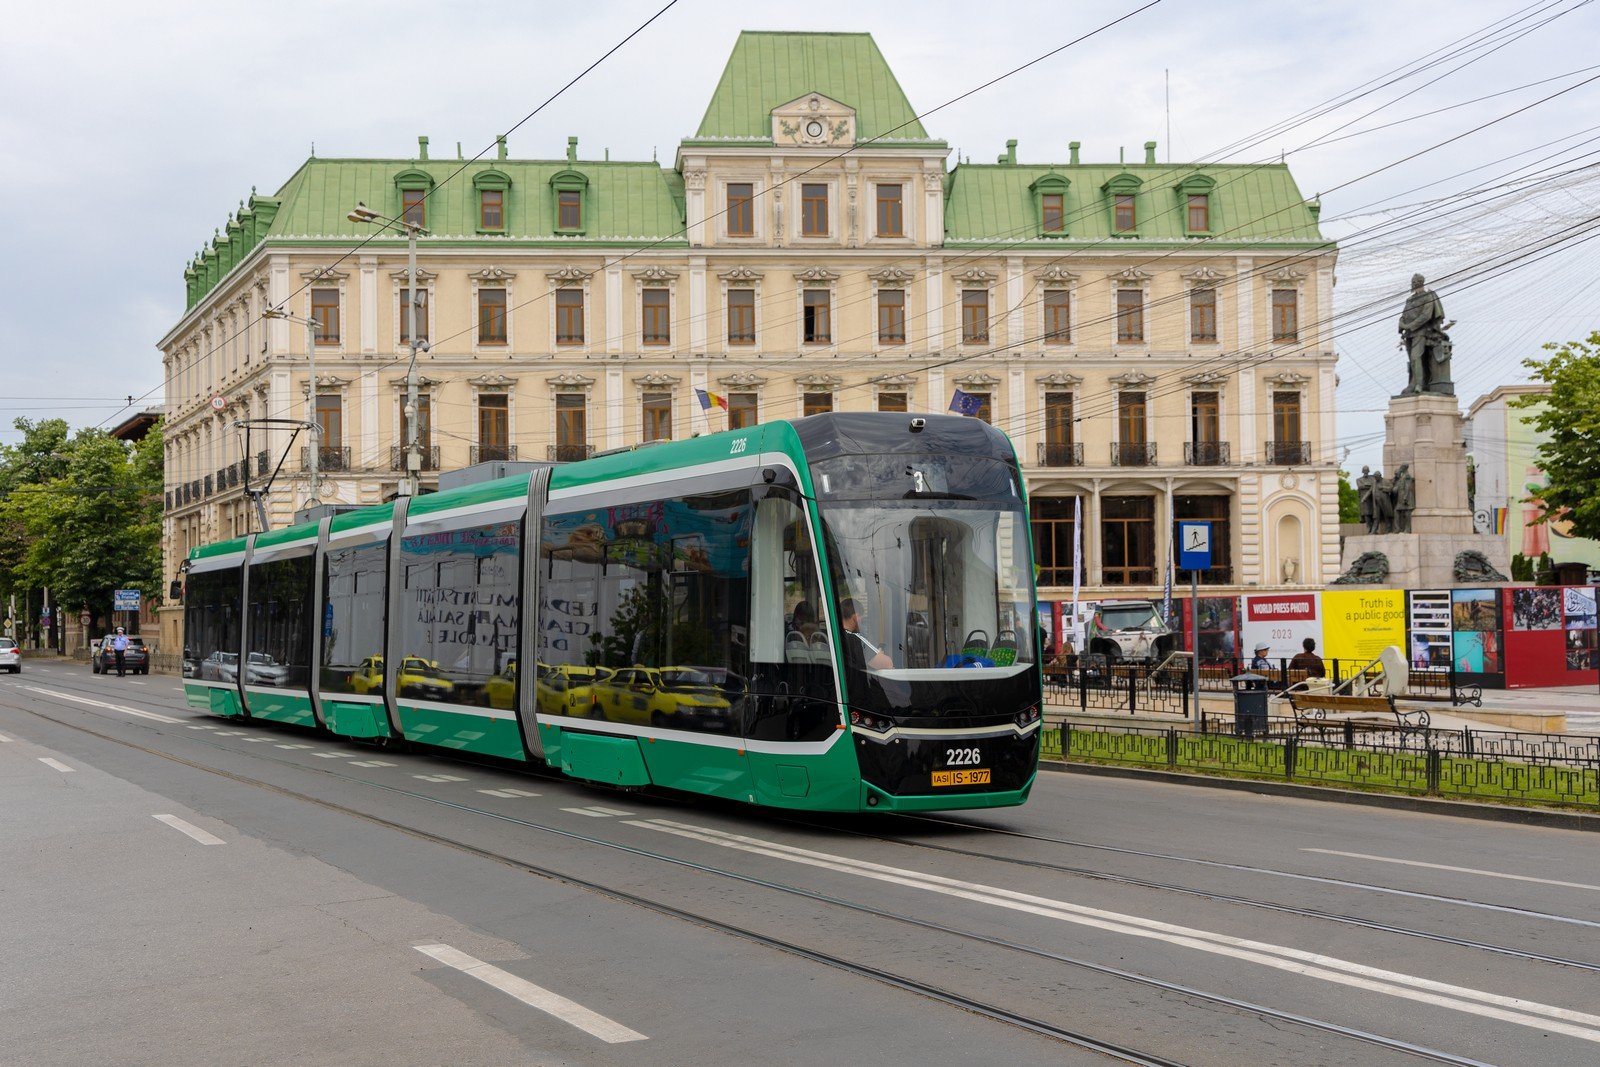  Convoaie de tramvaie și autobuze vor străbate Iașul duminică. 125 de ani de transport electric la Iași